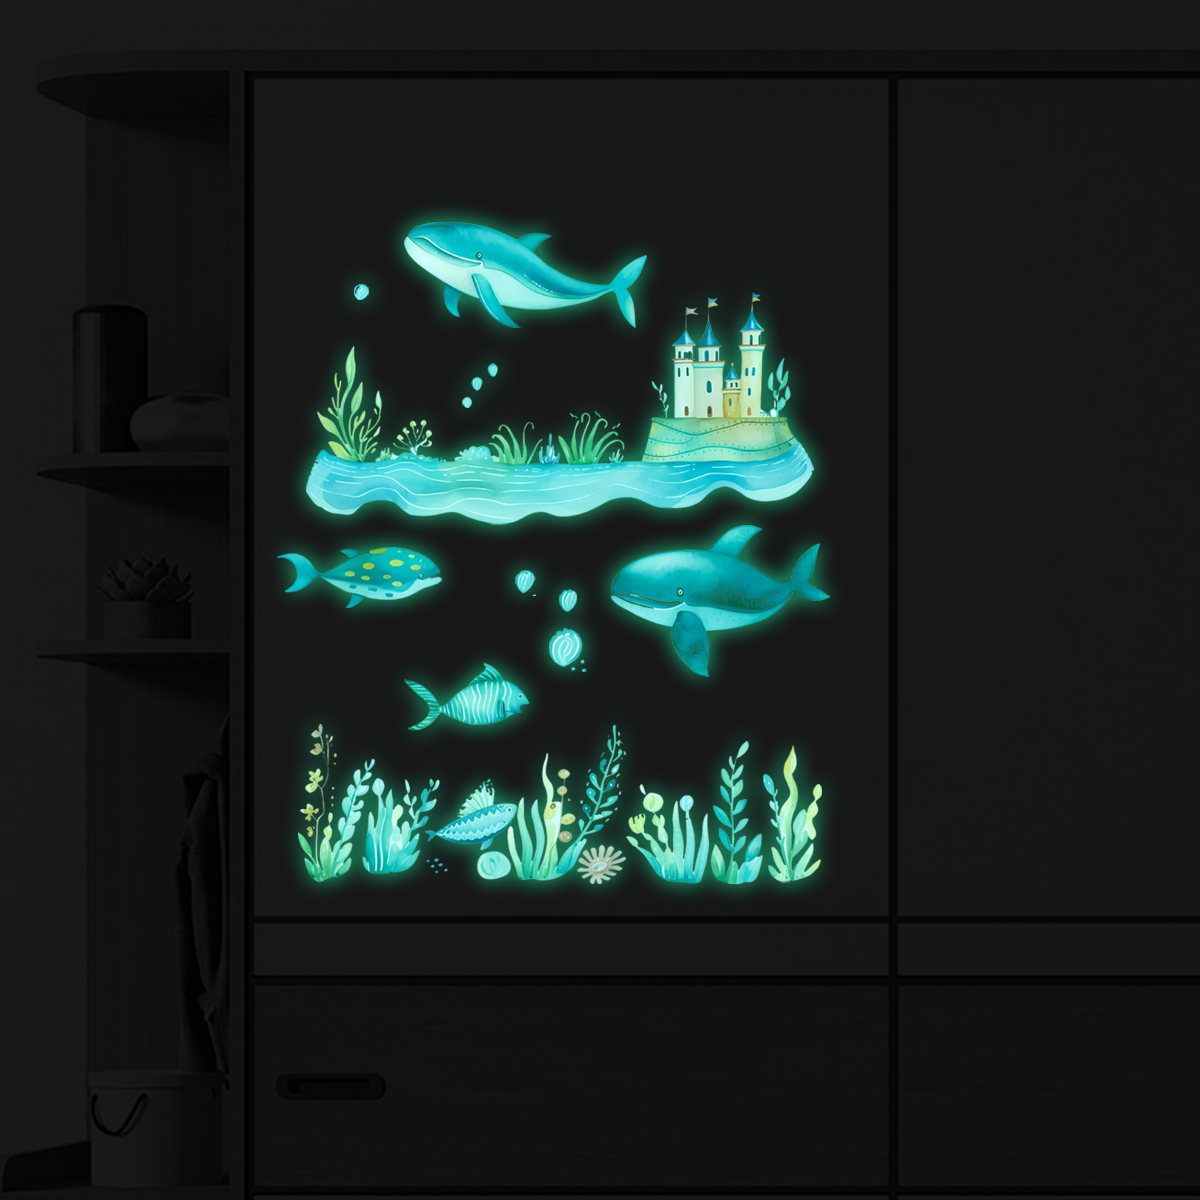 荧光卡通海底世界墙贴画装饰儿童房间布置卧室背景墙客厅夜光贴画